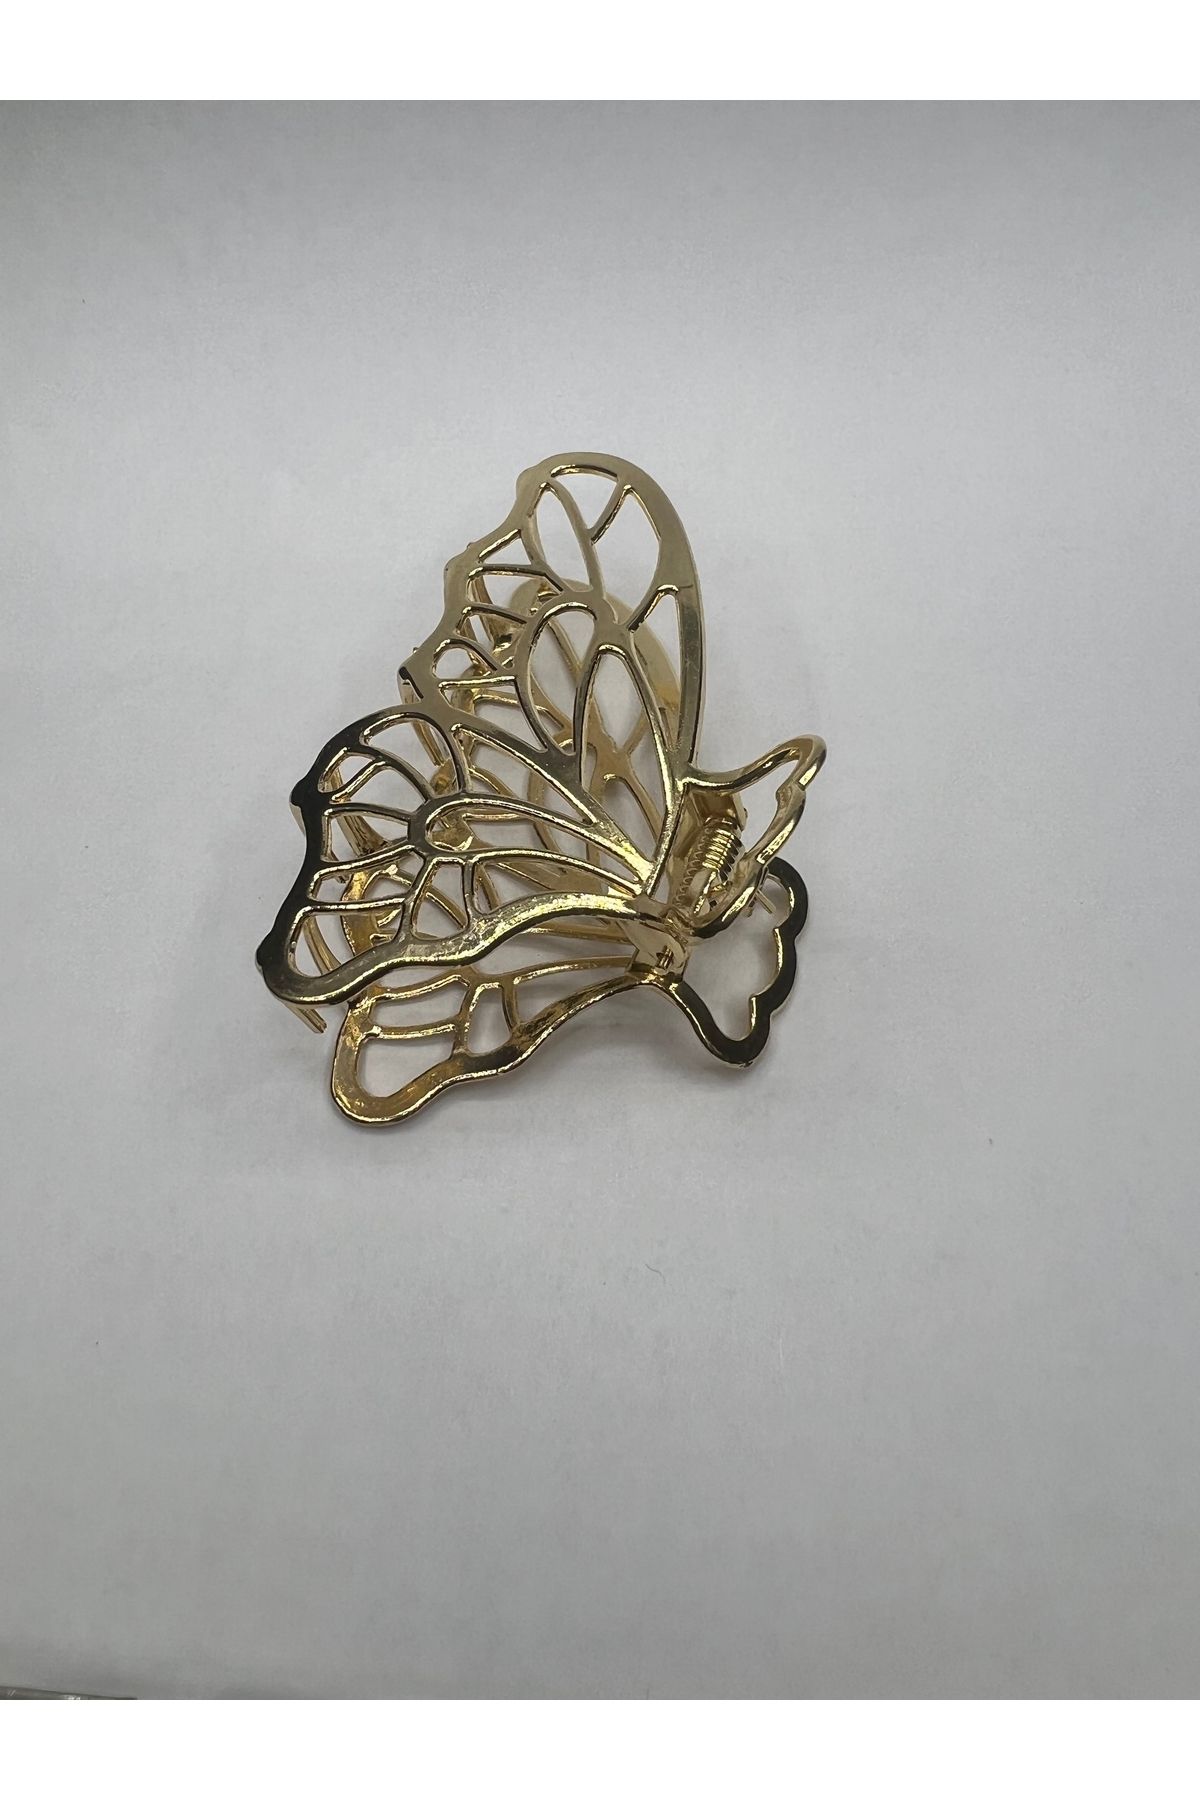 İKLİM BUTİK Kelebek Desenli Gold Renkli Metal Büyük Mandallı Toka